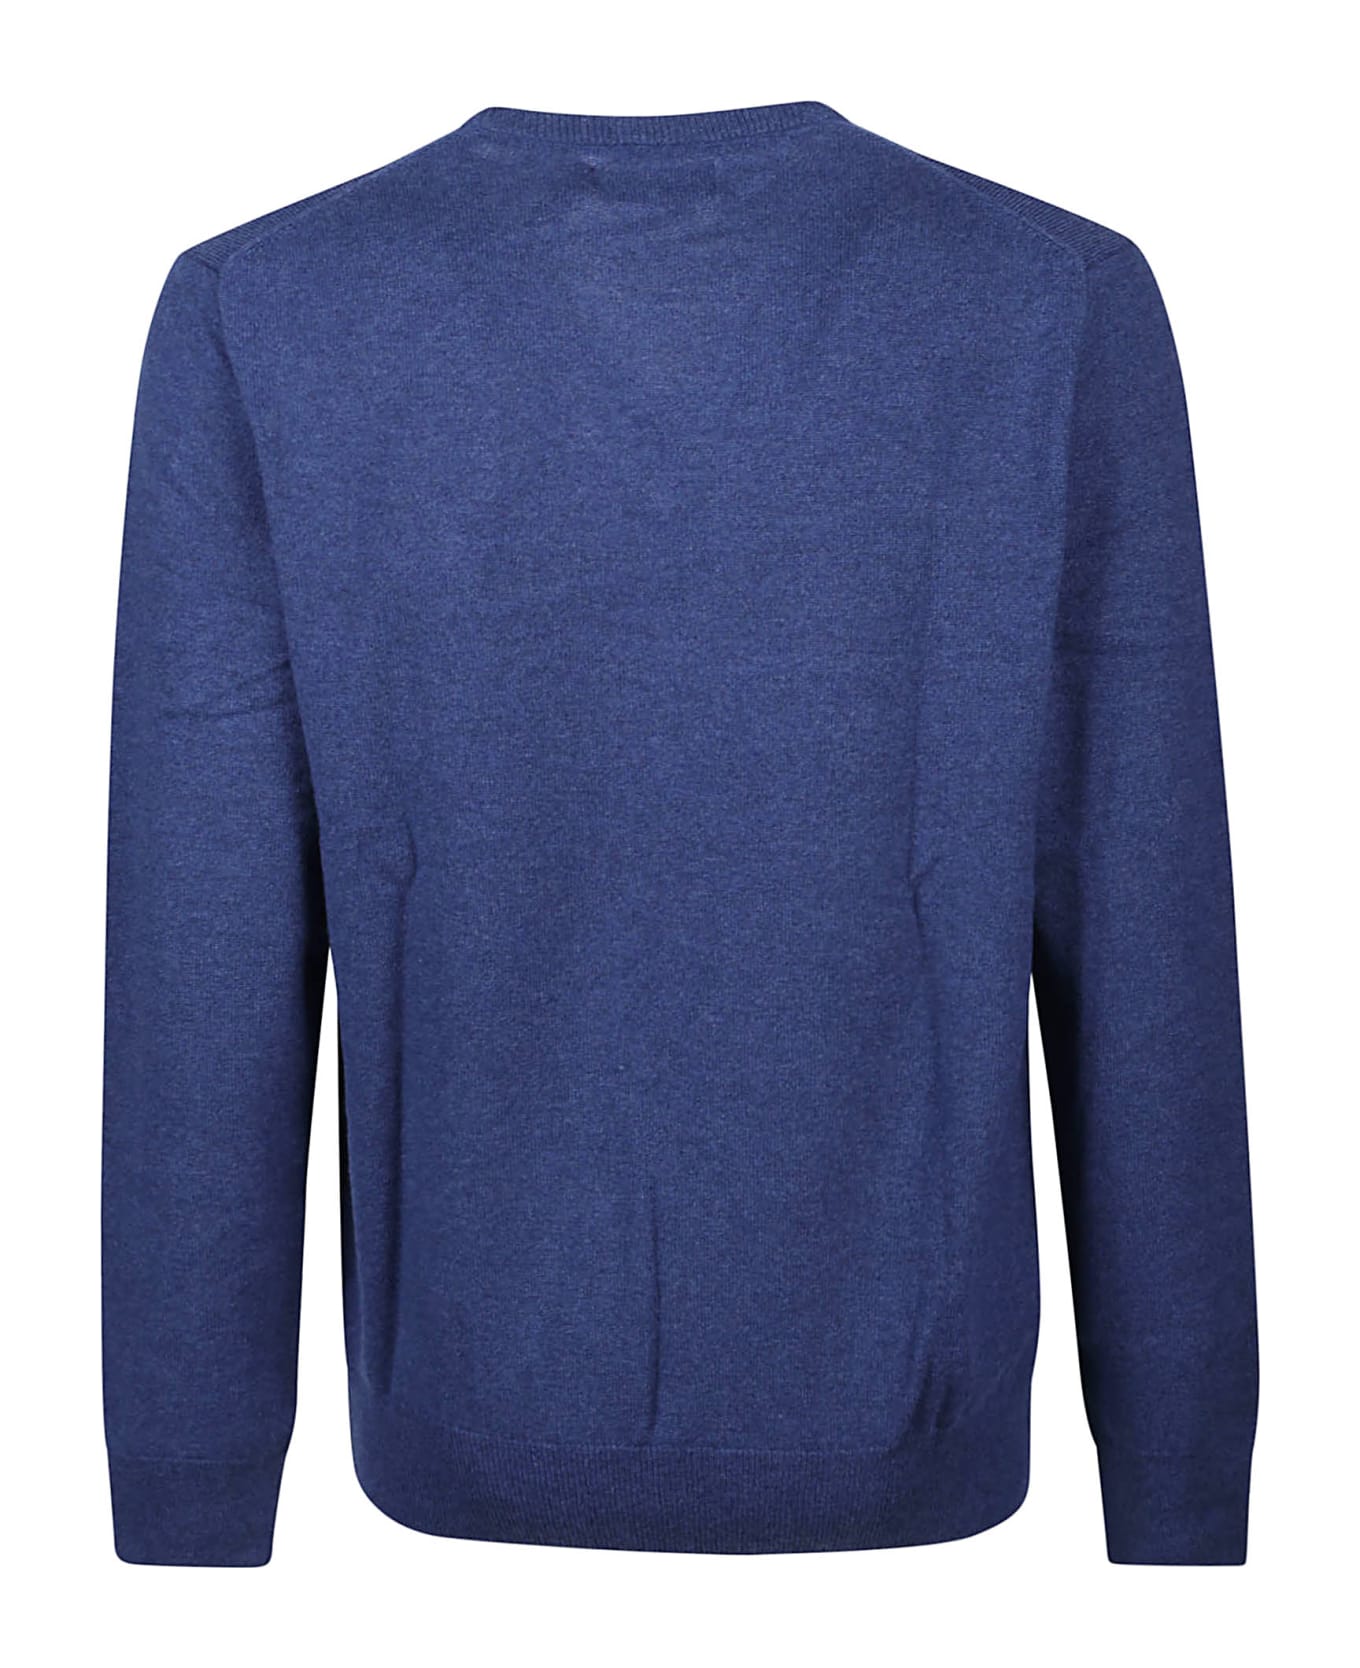 Polo Ralph Lauren Long Sleeve Sweater